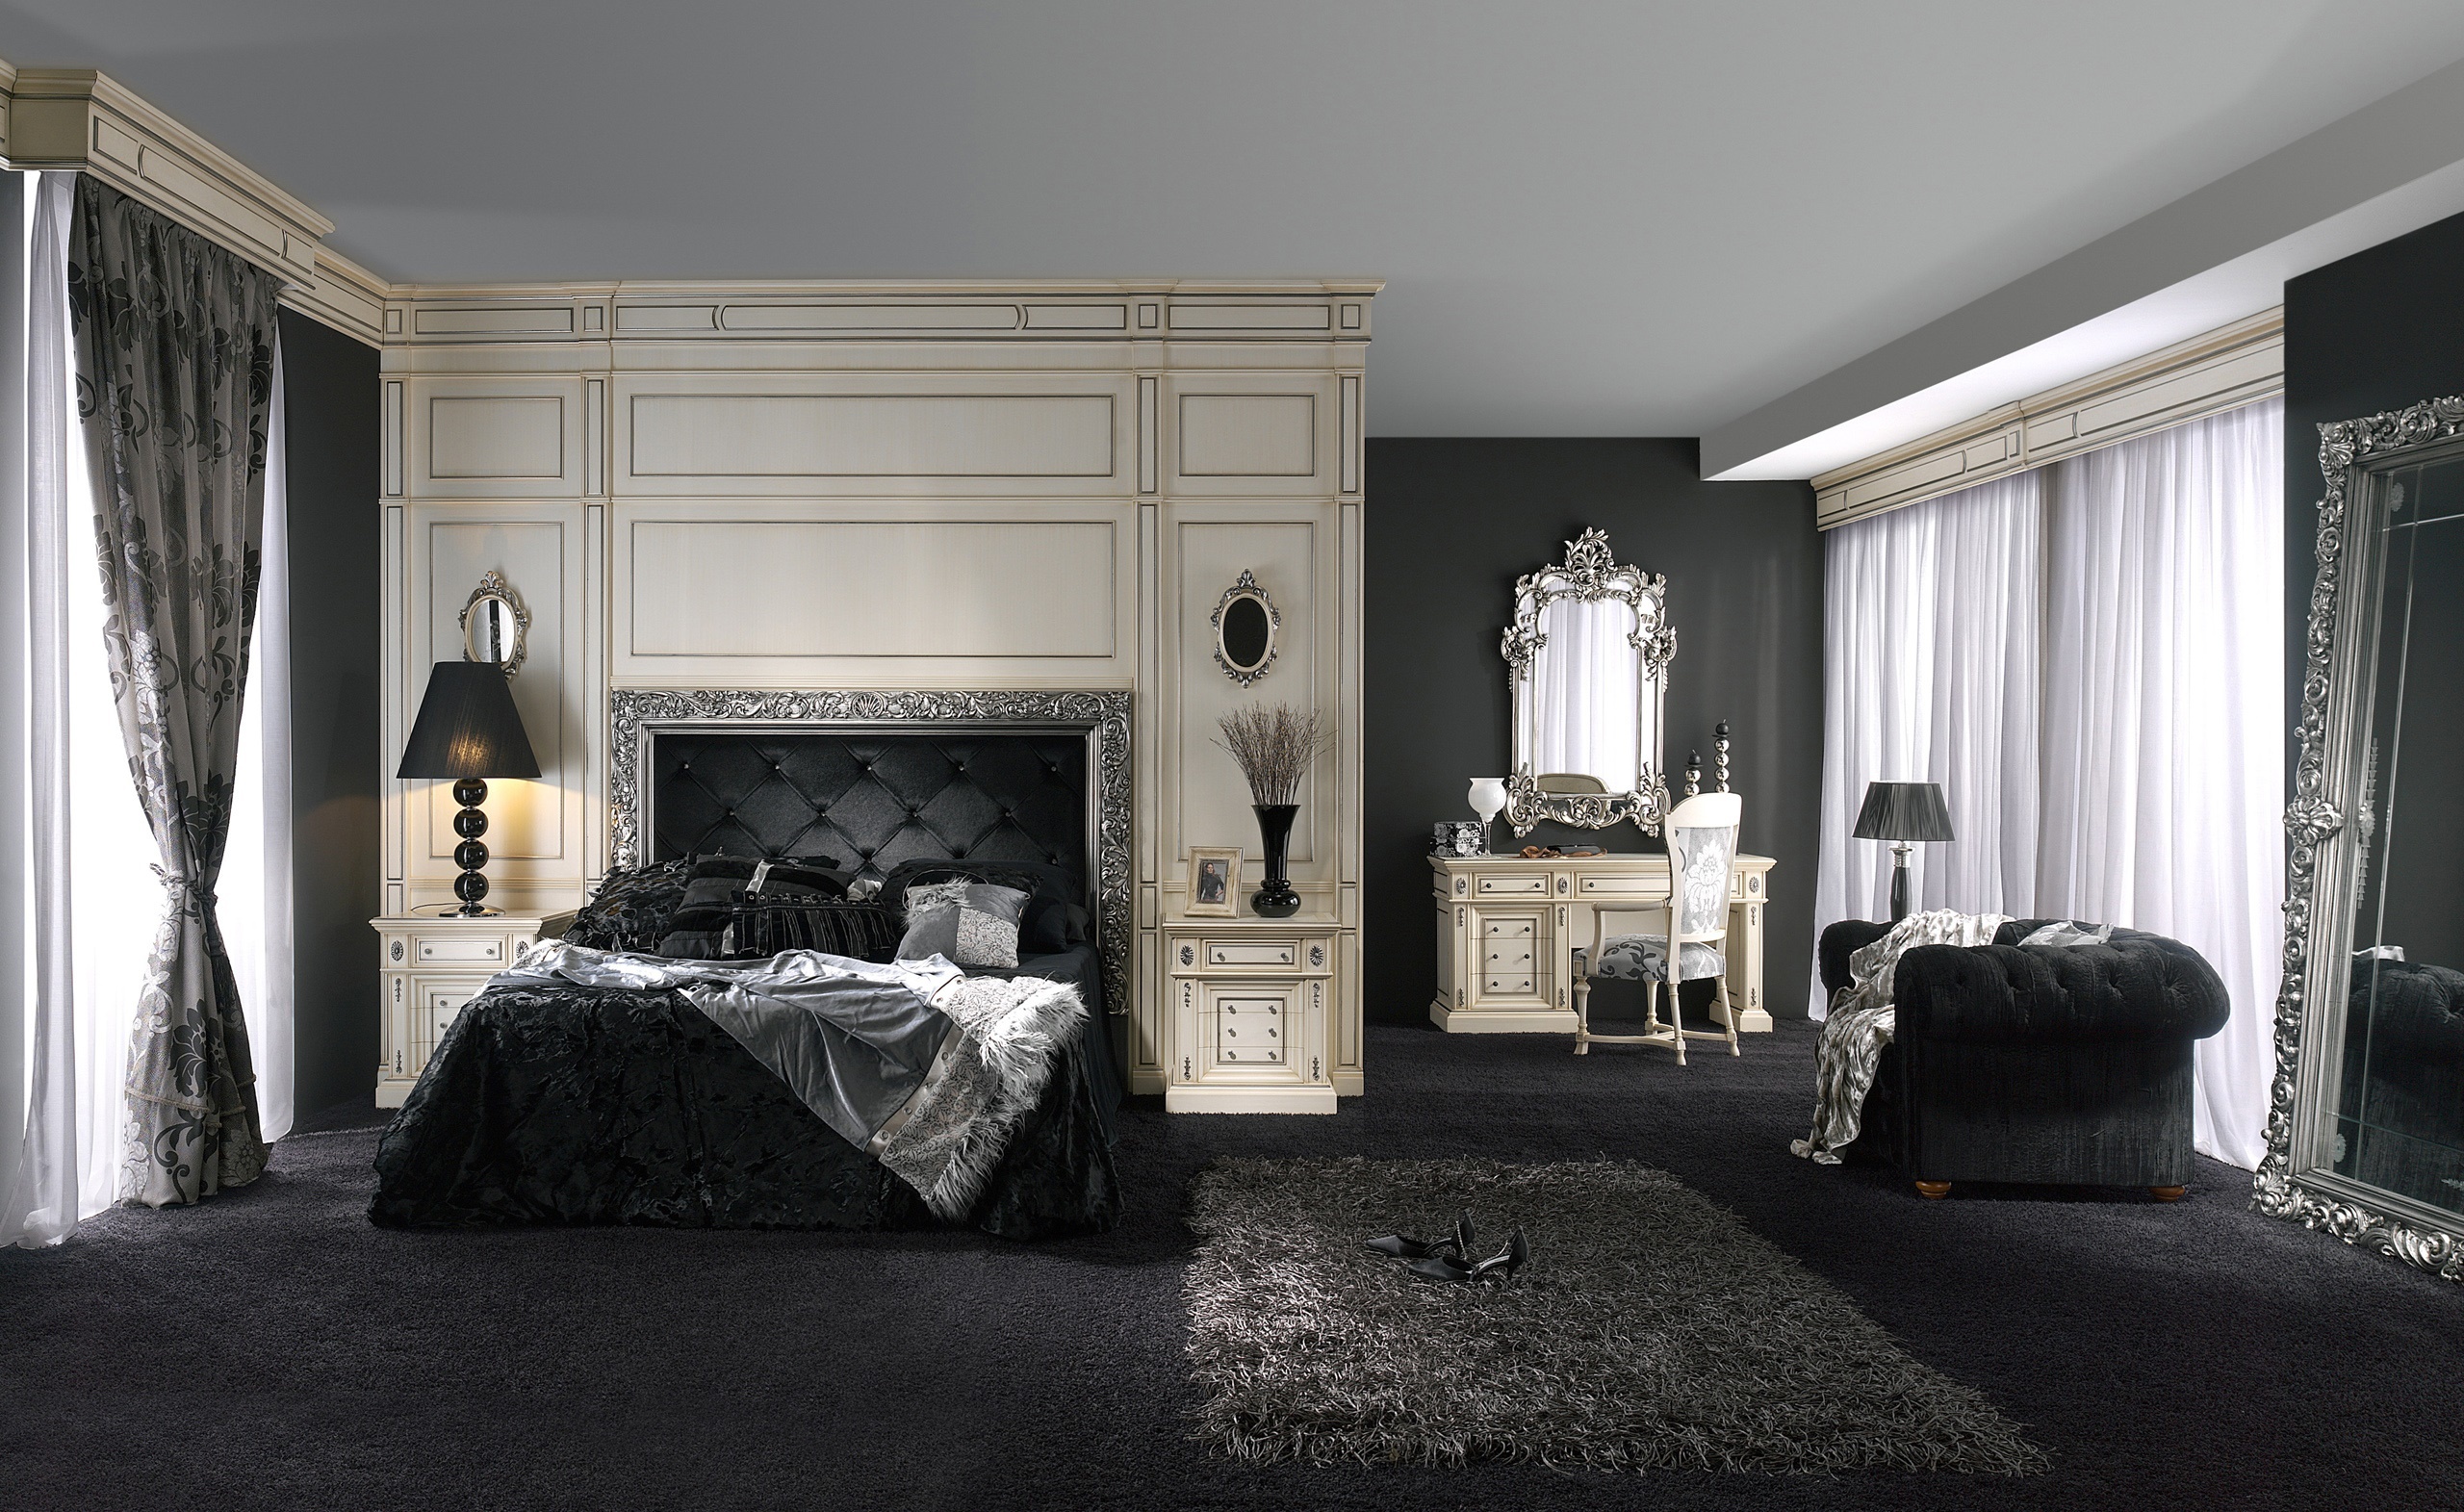 Классический комната мебель. Спальный гарнитур Версаче Италия. Спальня в стиле Ампир Барокко темная. Спальный гарнитур Версаче черный. Темная спальня Ампир.